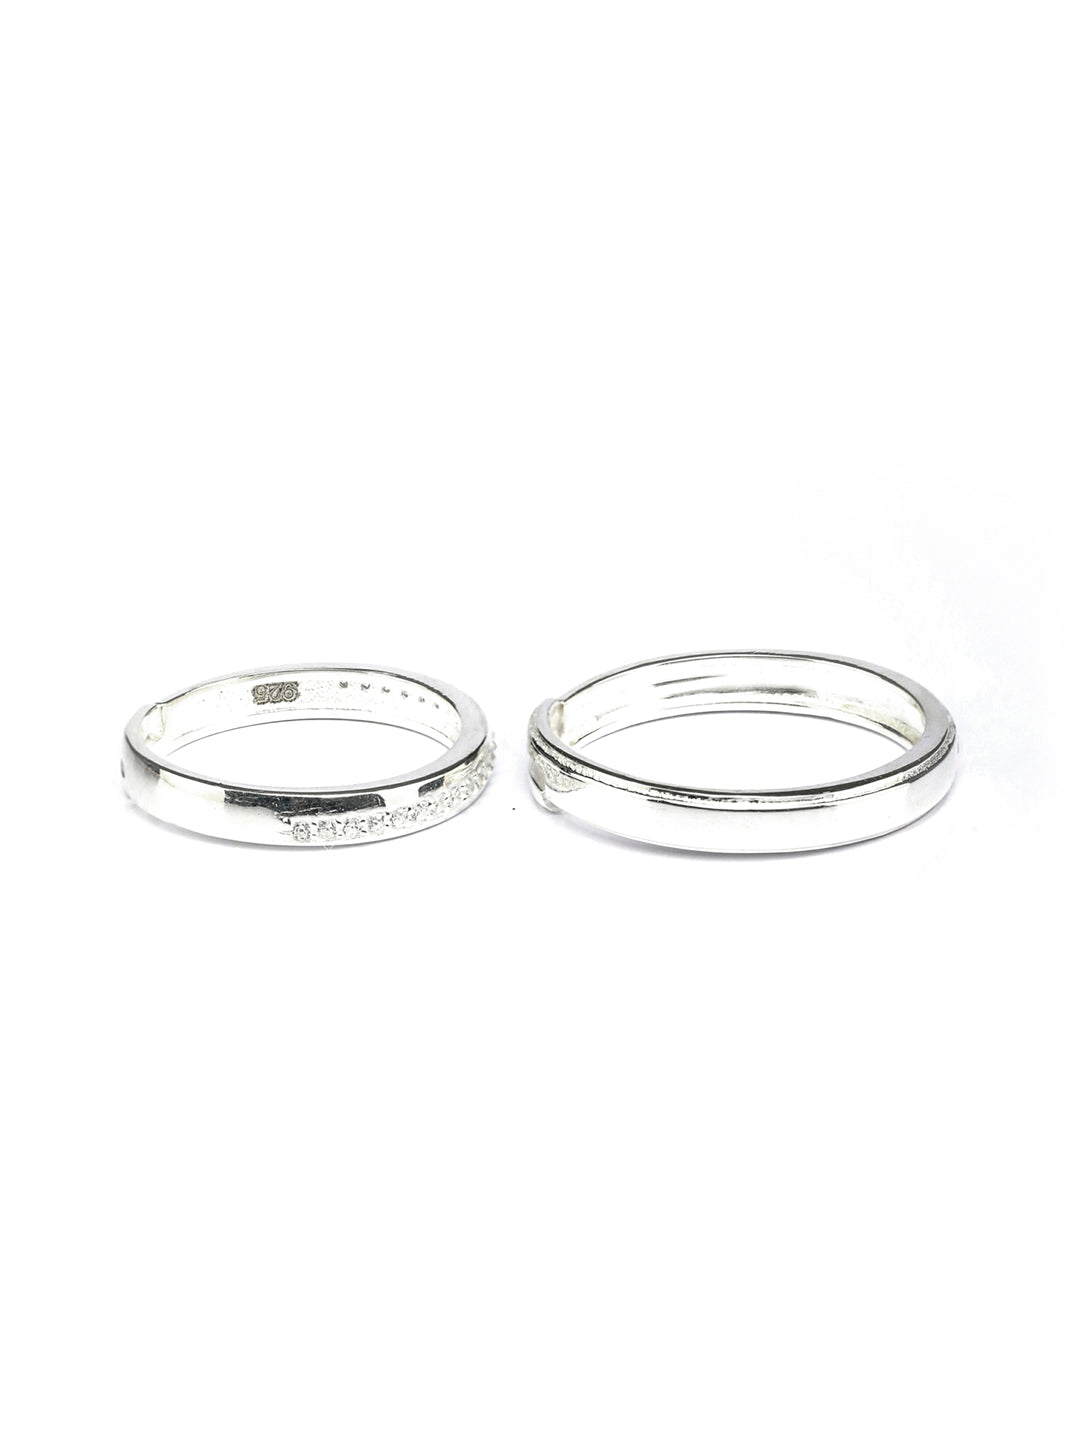 Priyaasi Women Eternity Sterling Silver Couple Rings - Distacart